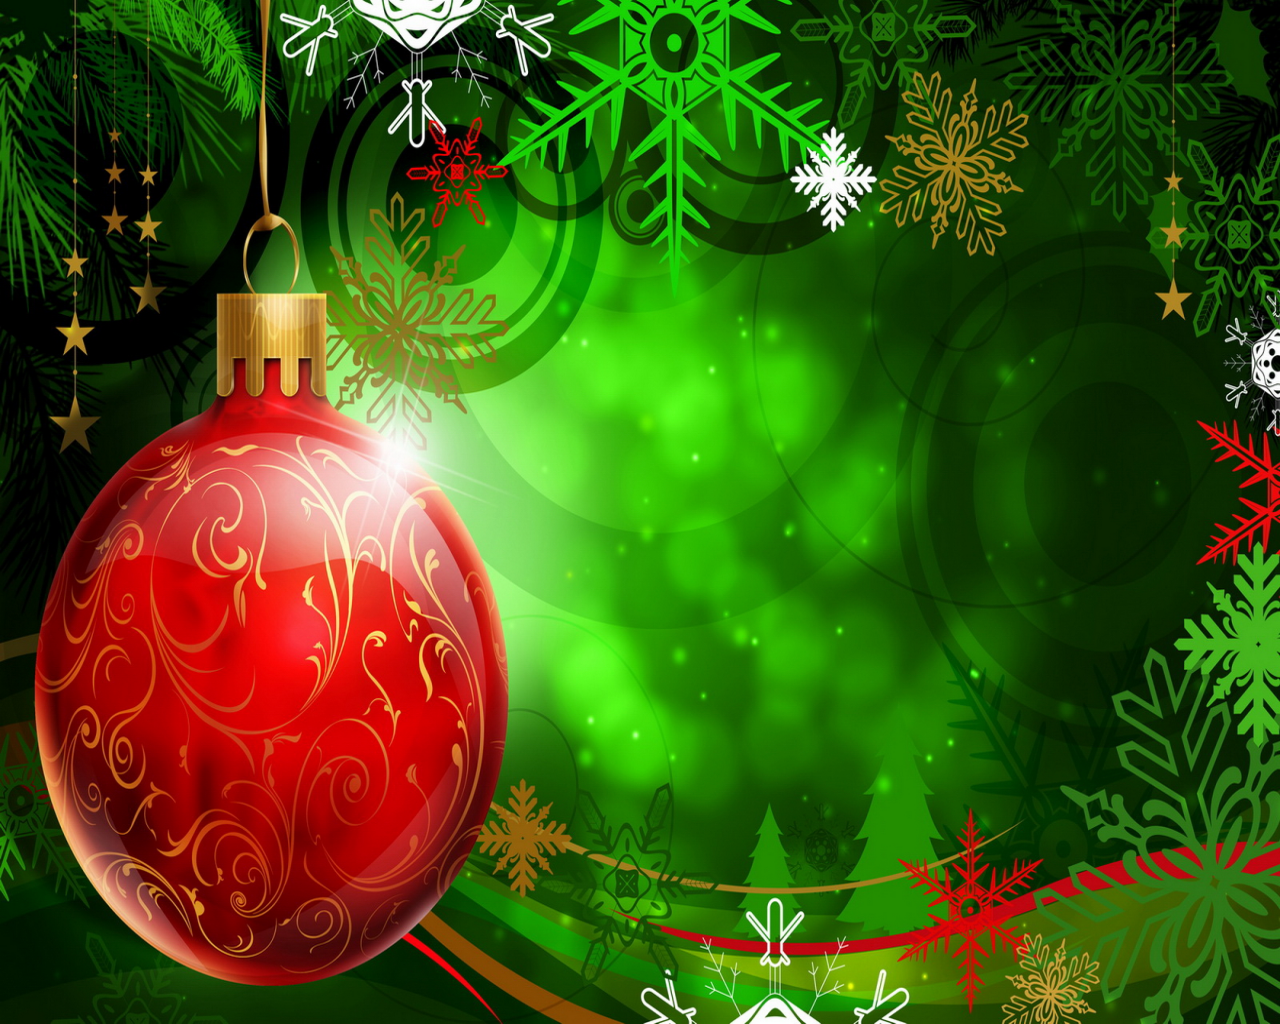 live wallpaper di natale per desktop,ornamento di natale,verde,decorazione natalizia,natale,ornamento